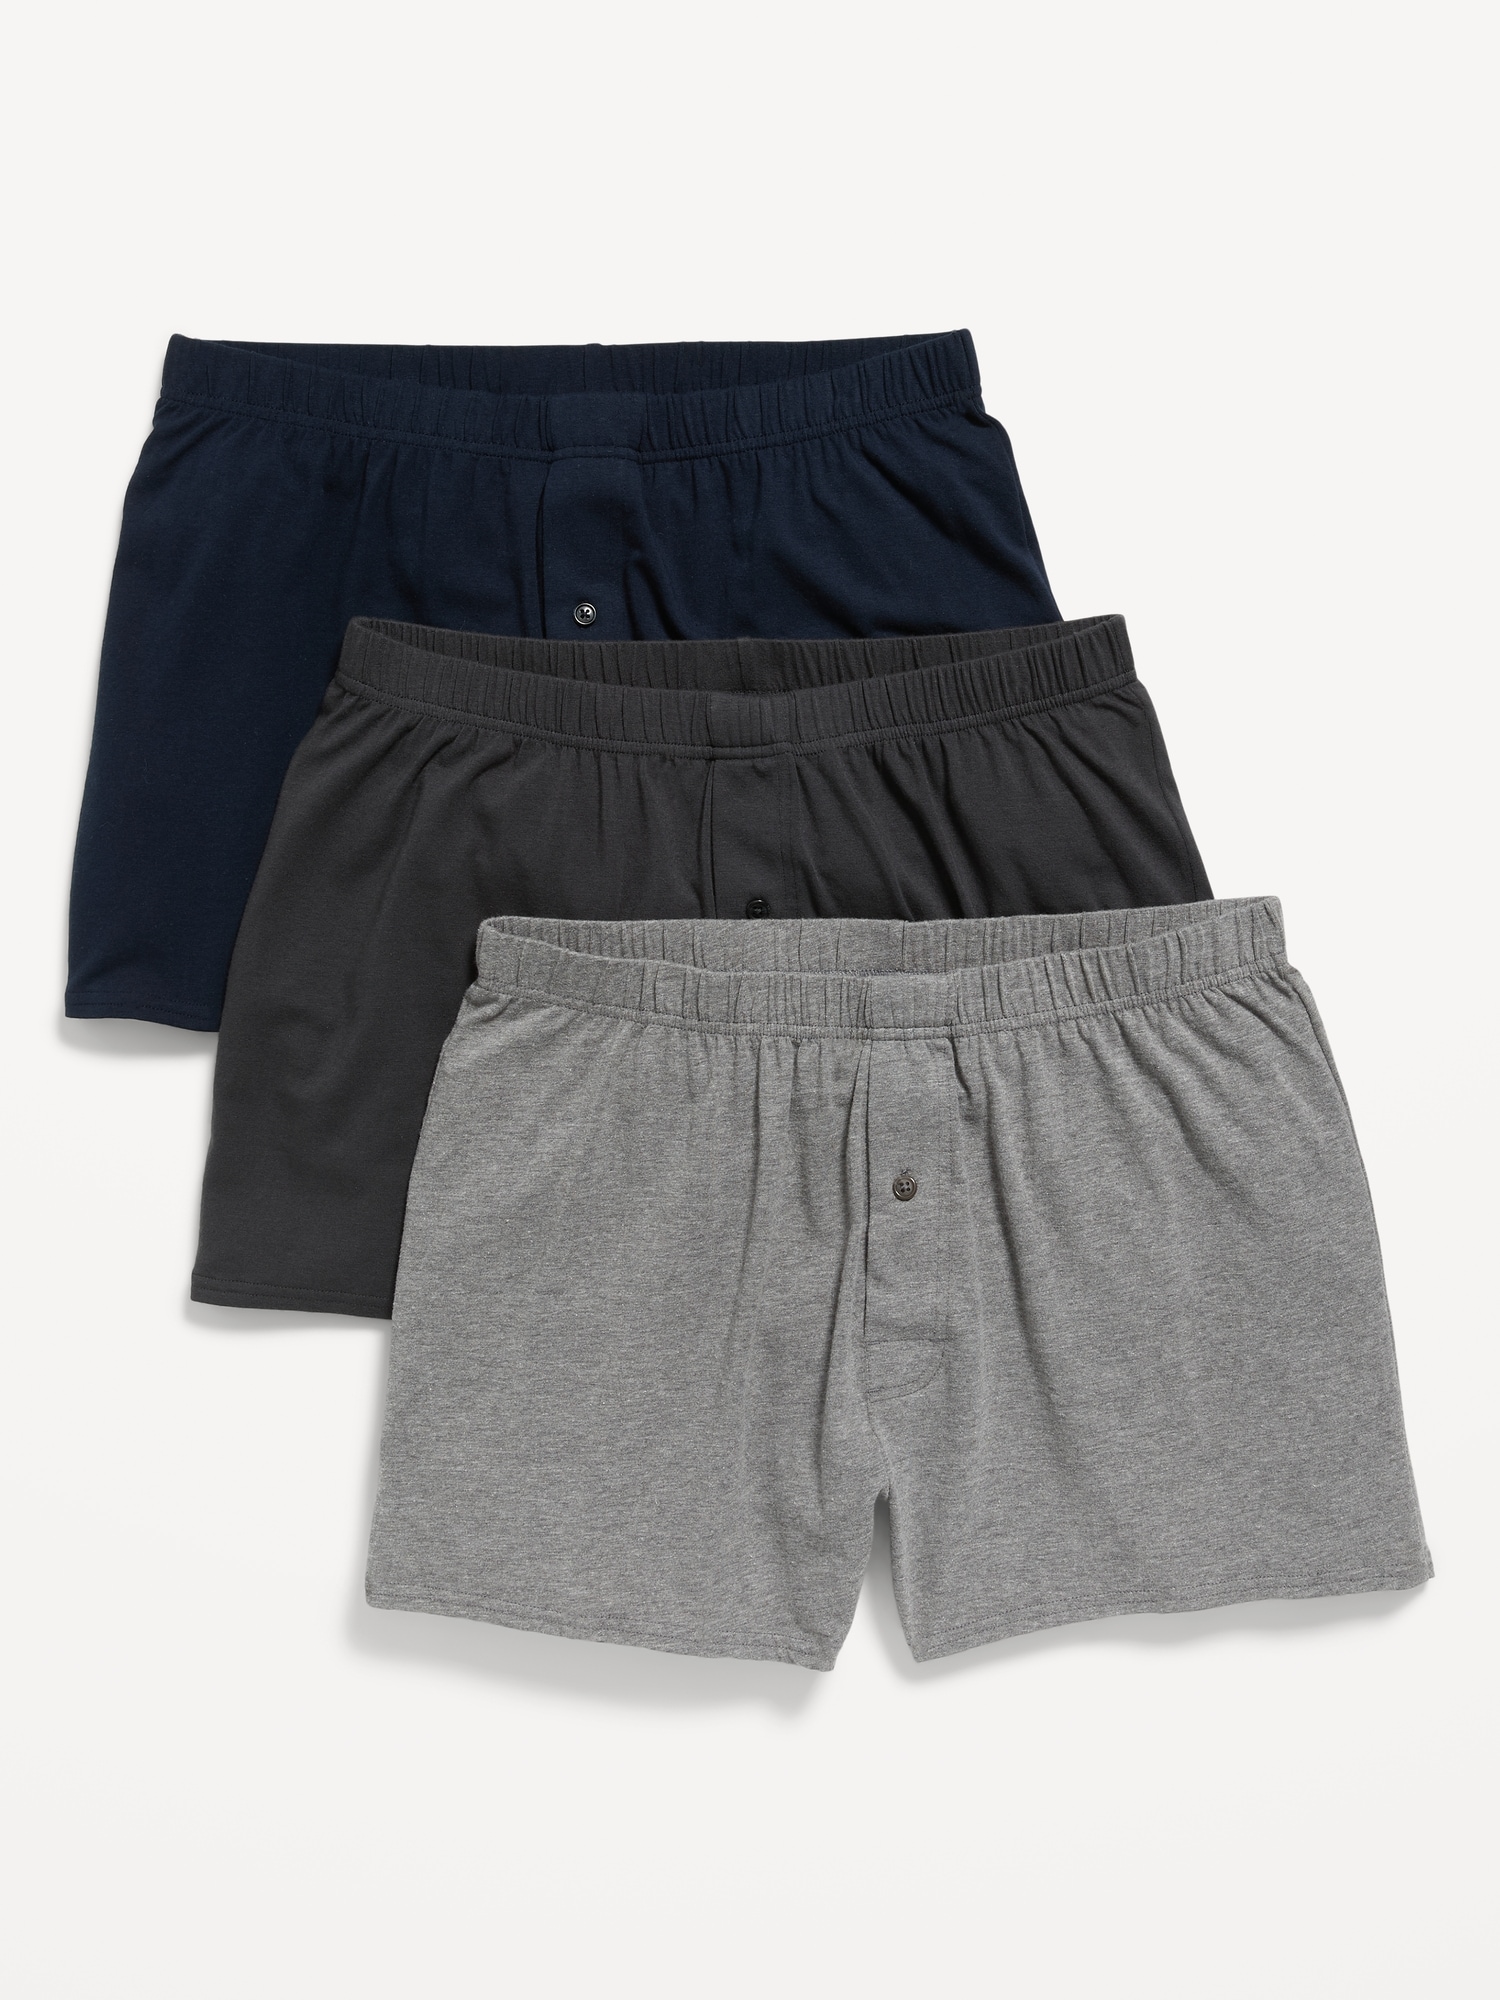 Solid Jersey-Knit Boxer-Brief Underwear 3-Pack--6.25-inch inseam